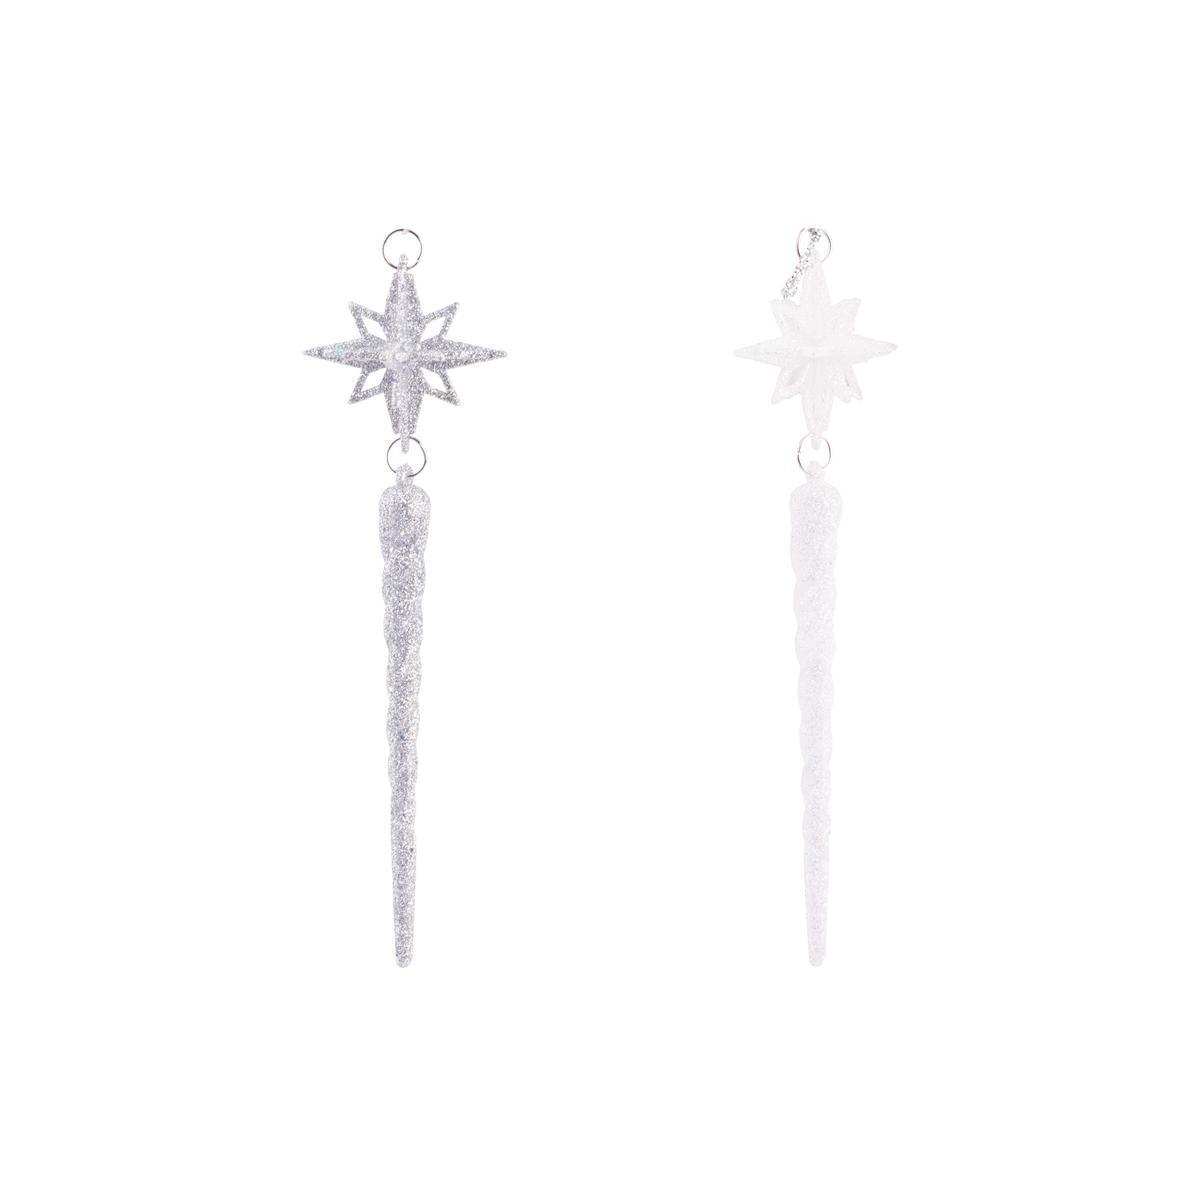 Suspension étoile stalactite - Plastique - H 12 cm - Argentée ou blanc